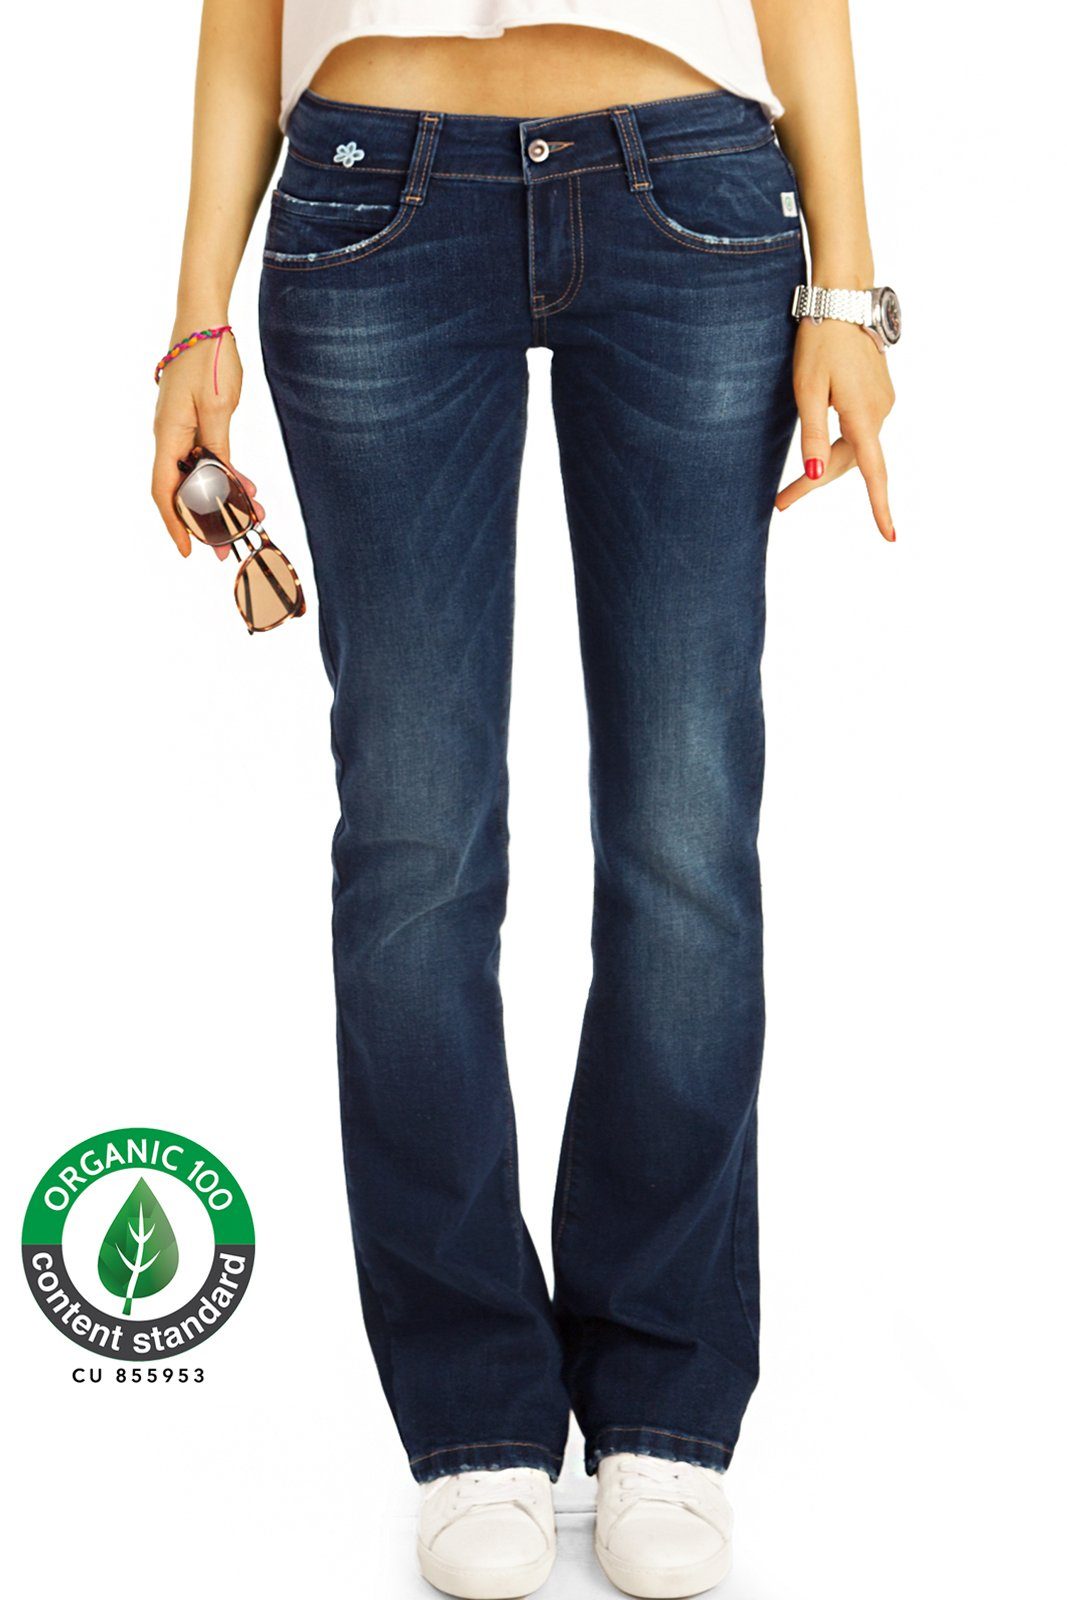 be styled Bootcut-Jeans Bio_005 Damen Jeanshosen mit ausgestelltem Bein in  dunkelblau low waist